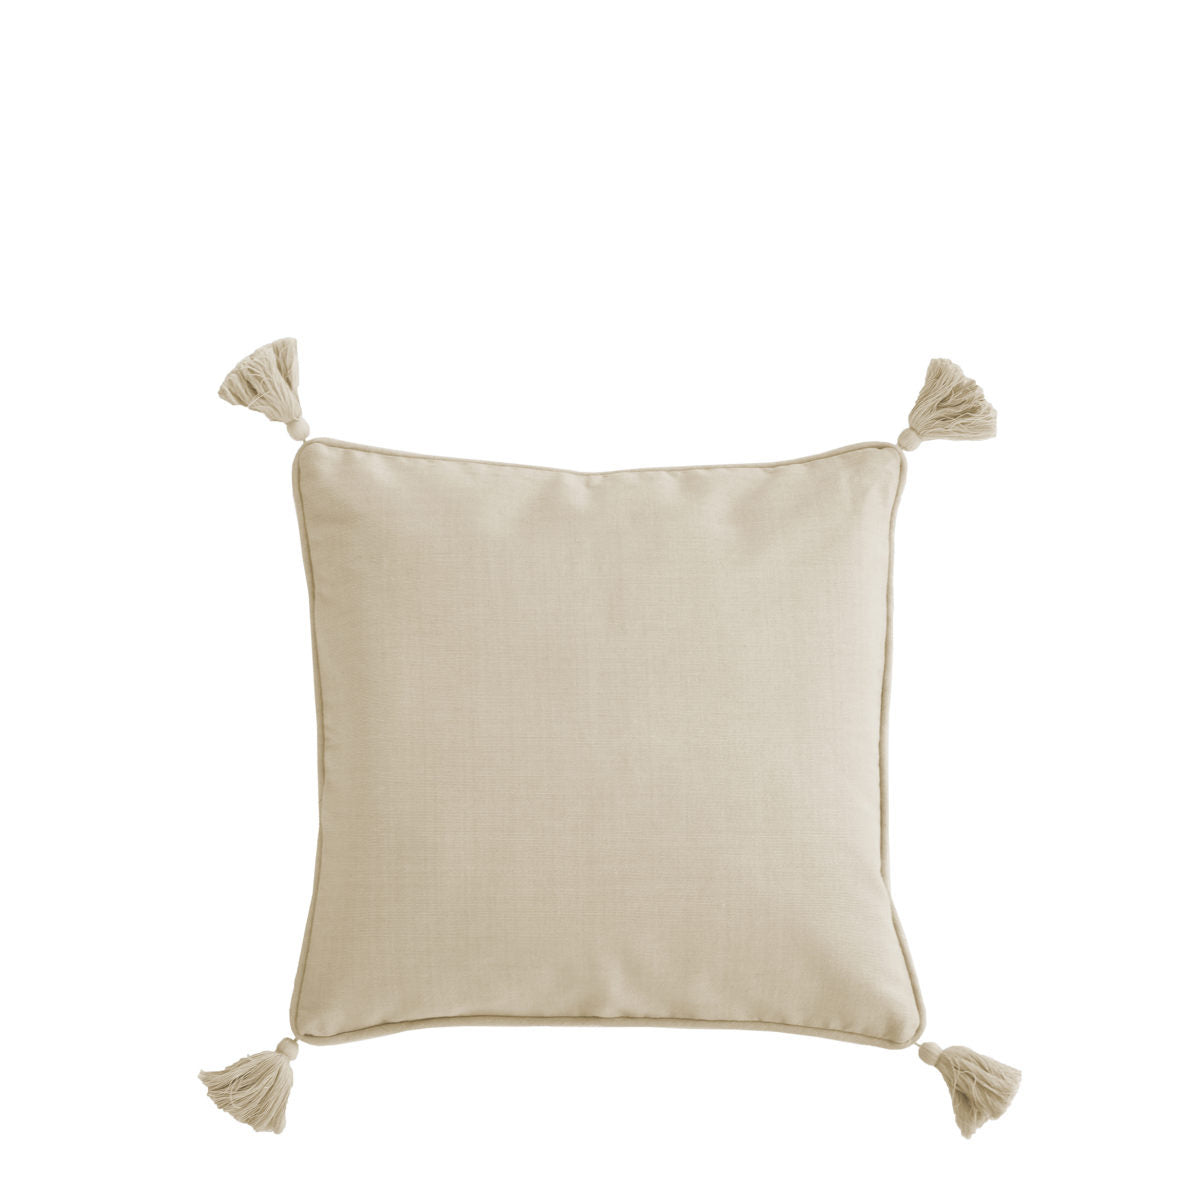 Vallsund Beige cushion Cover with tassels